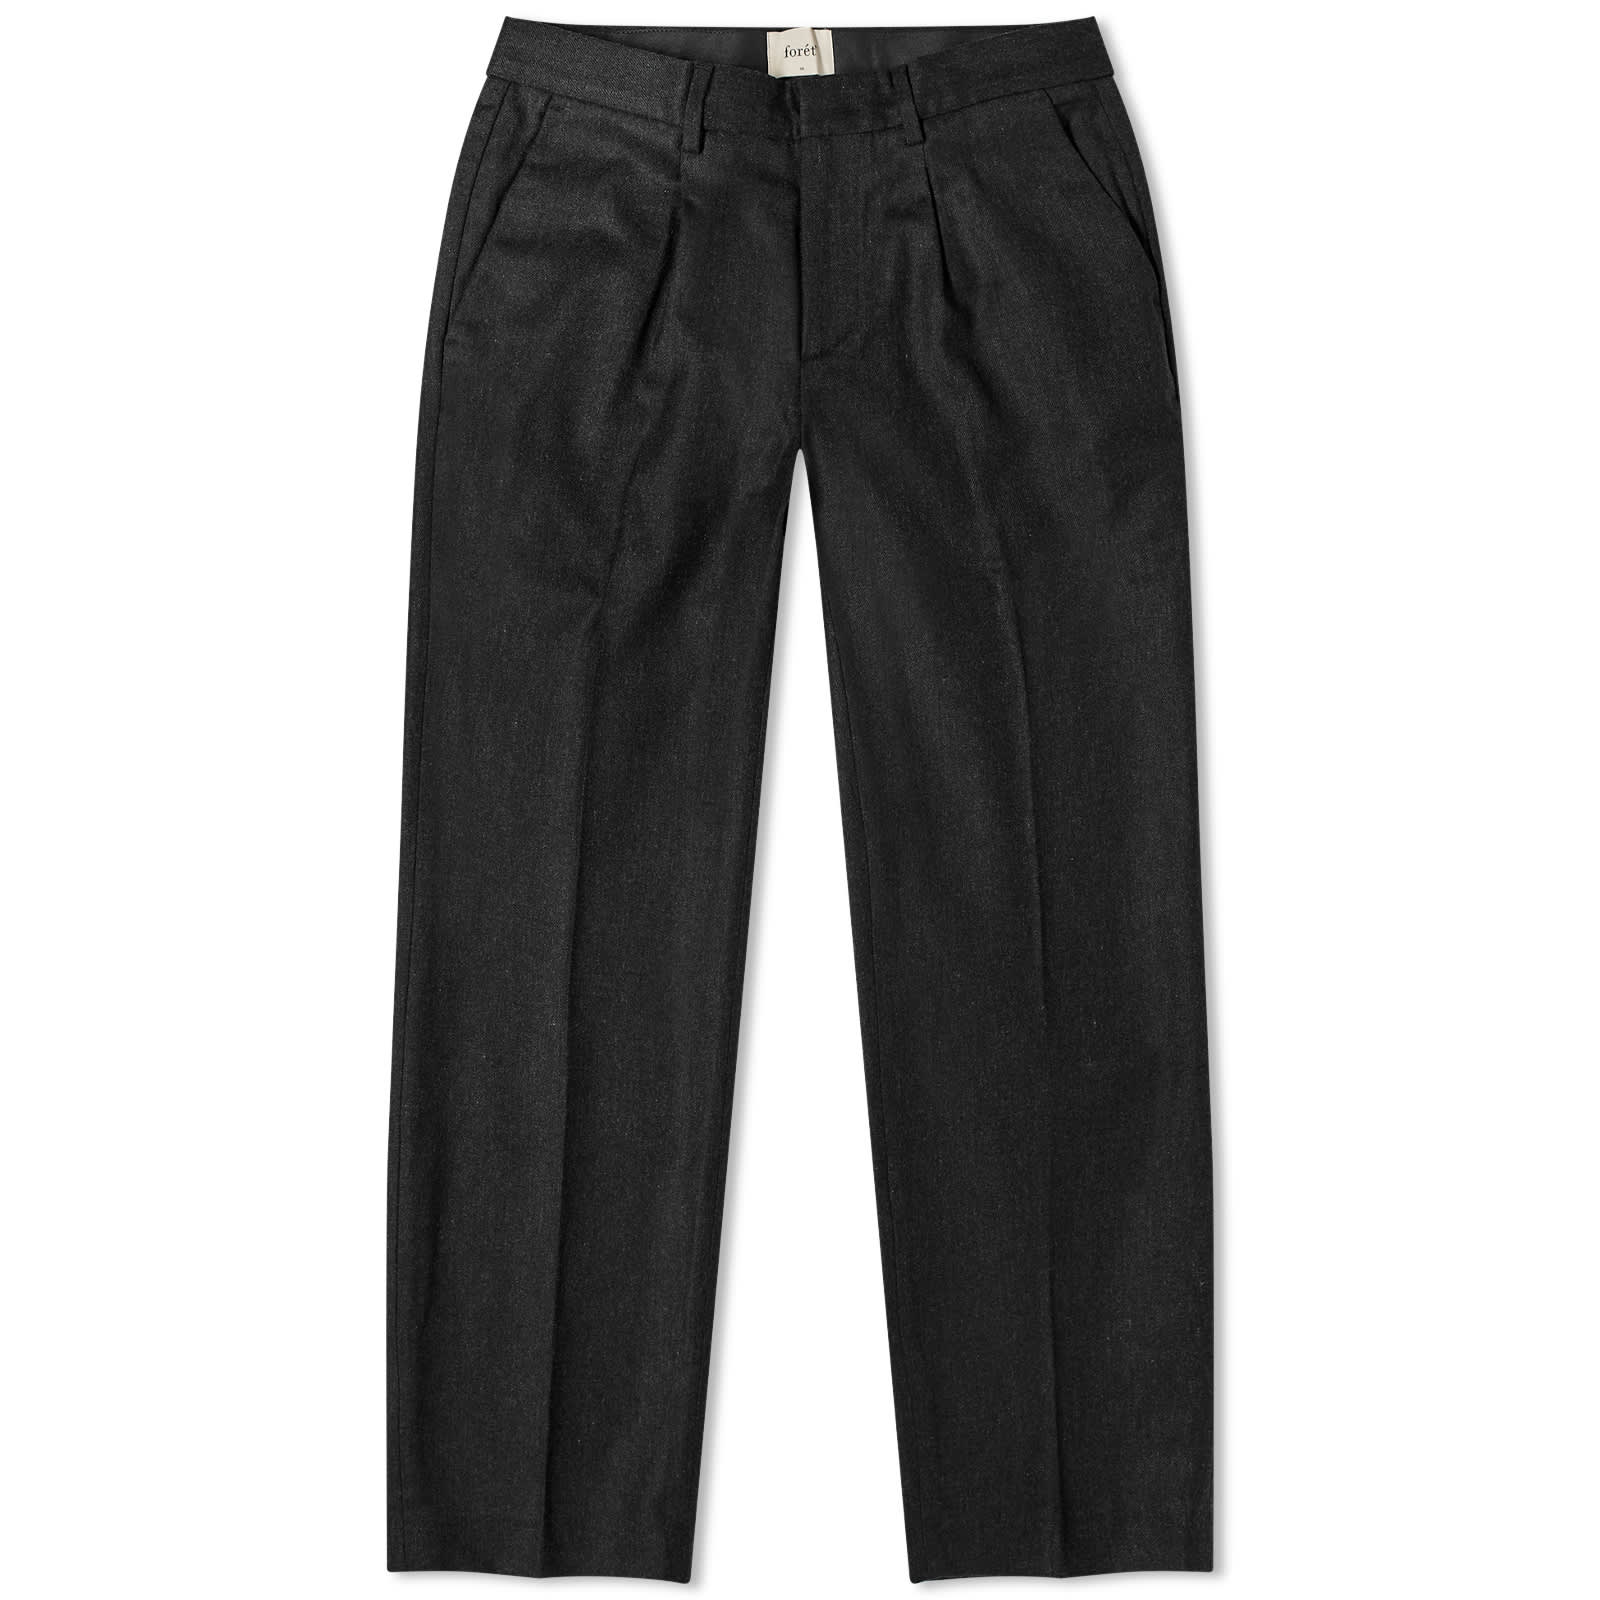 Брюки Foret Read Wool, цвет Dark Grey Melange брюки шерстяные классические 46 размер